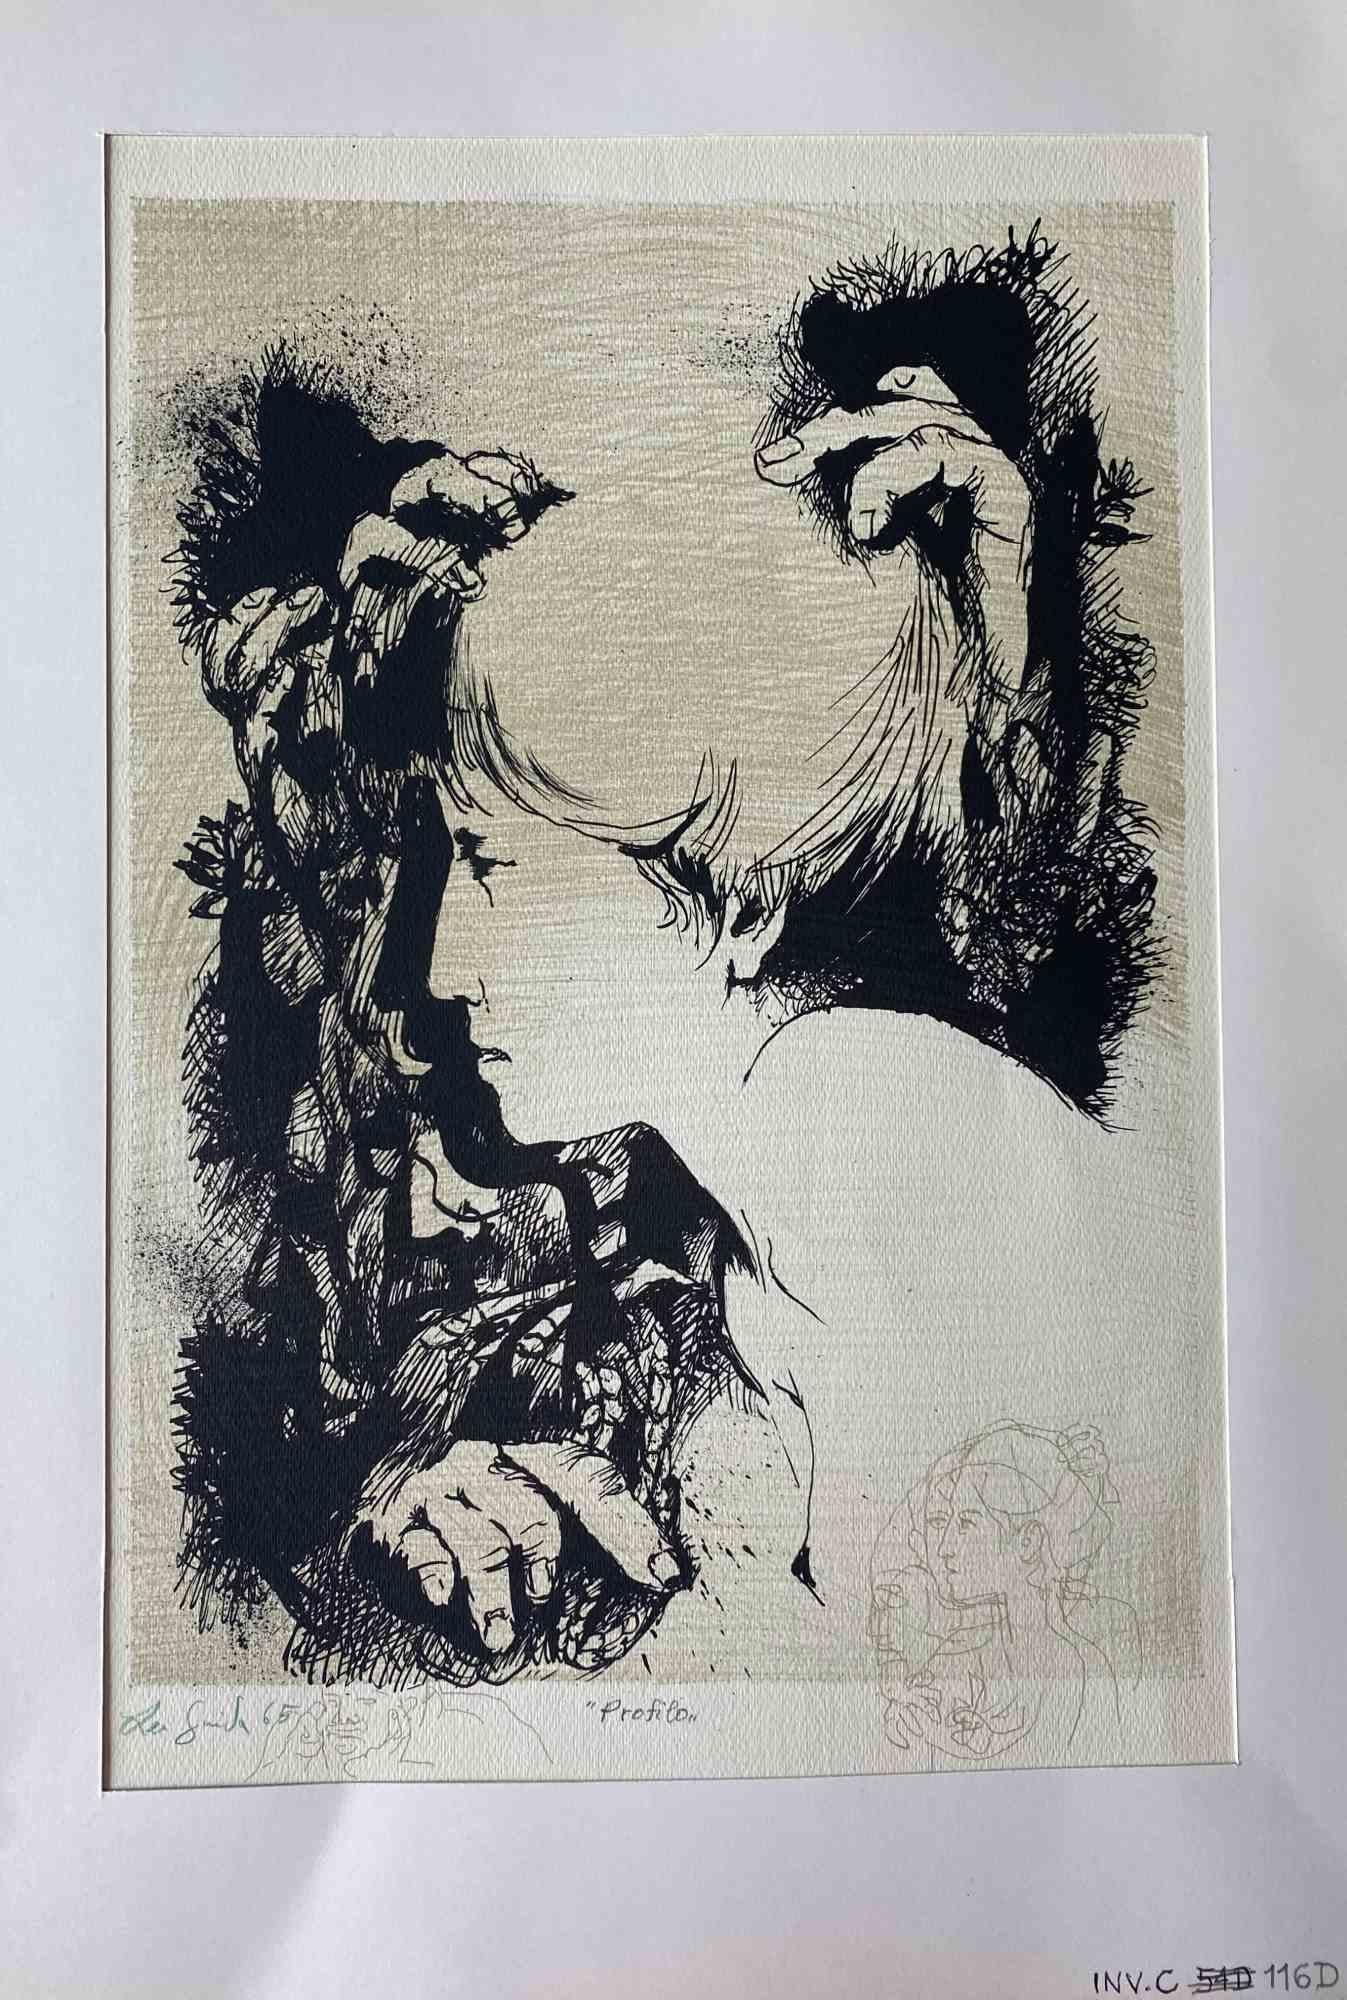 Portrait ist ein Original-Kunstwerk, das 1965 von dem italienischen zeitgenössischen Künstler Leo Guida geschaffen wurde  (1992 - 2017).

Original Radierung und Aquatinta auf elfenbeinfarbenem Papier, mit Karton (50 x 35 cm)
 
Am unteren Rand